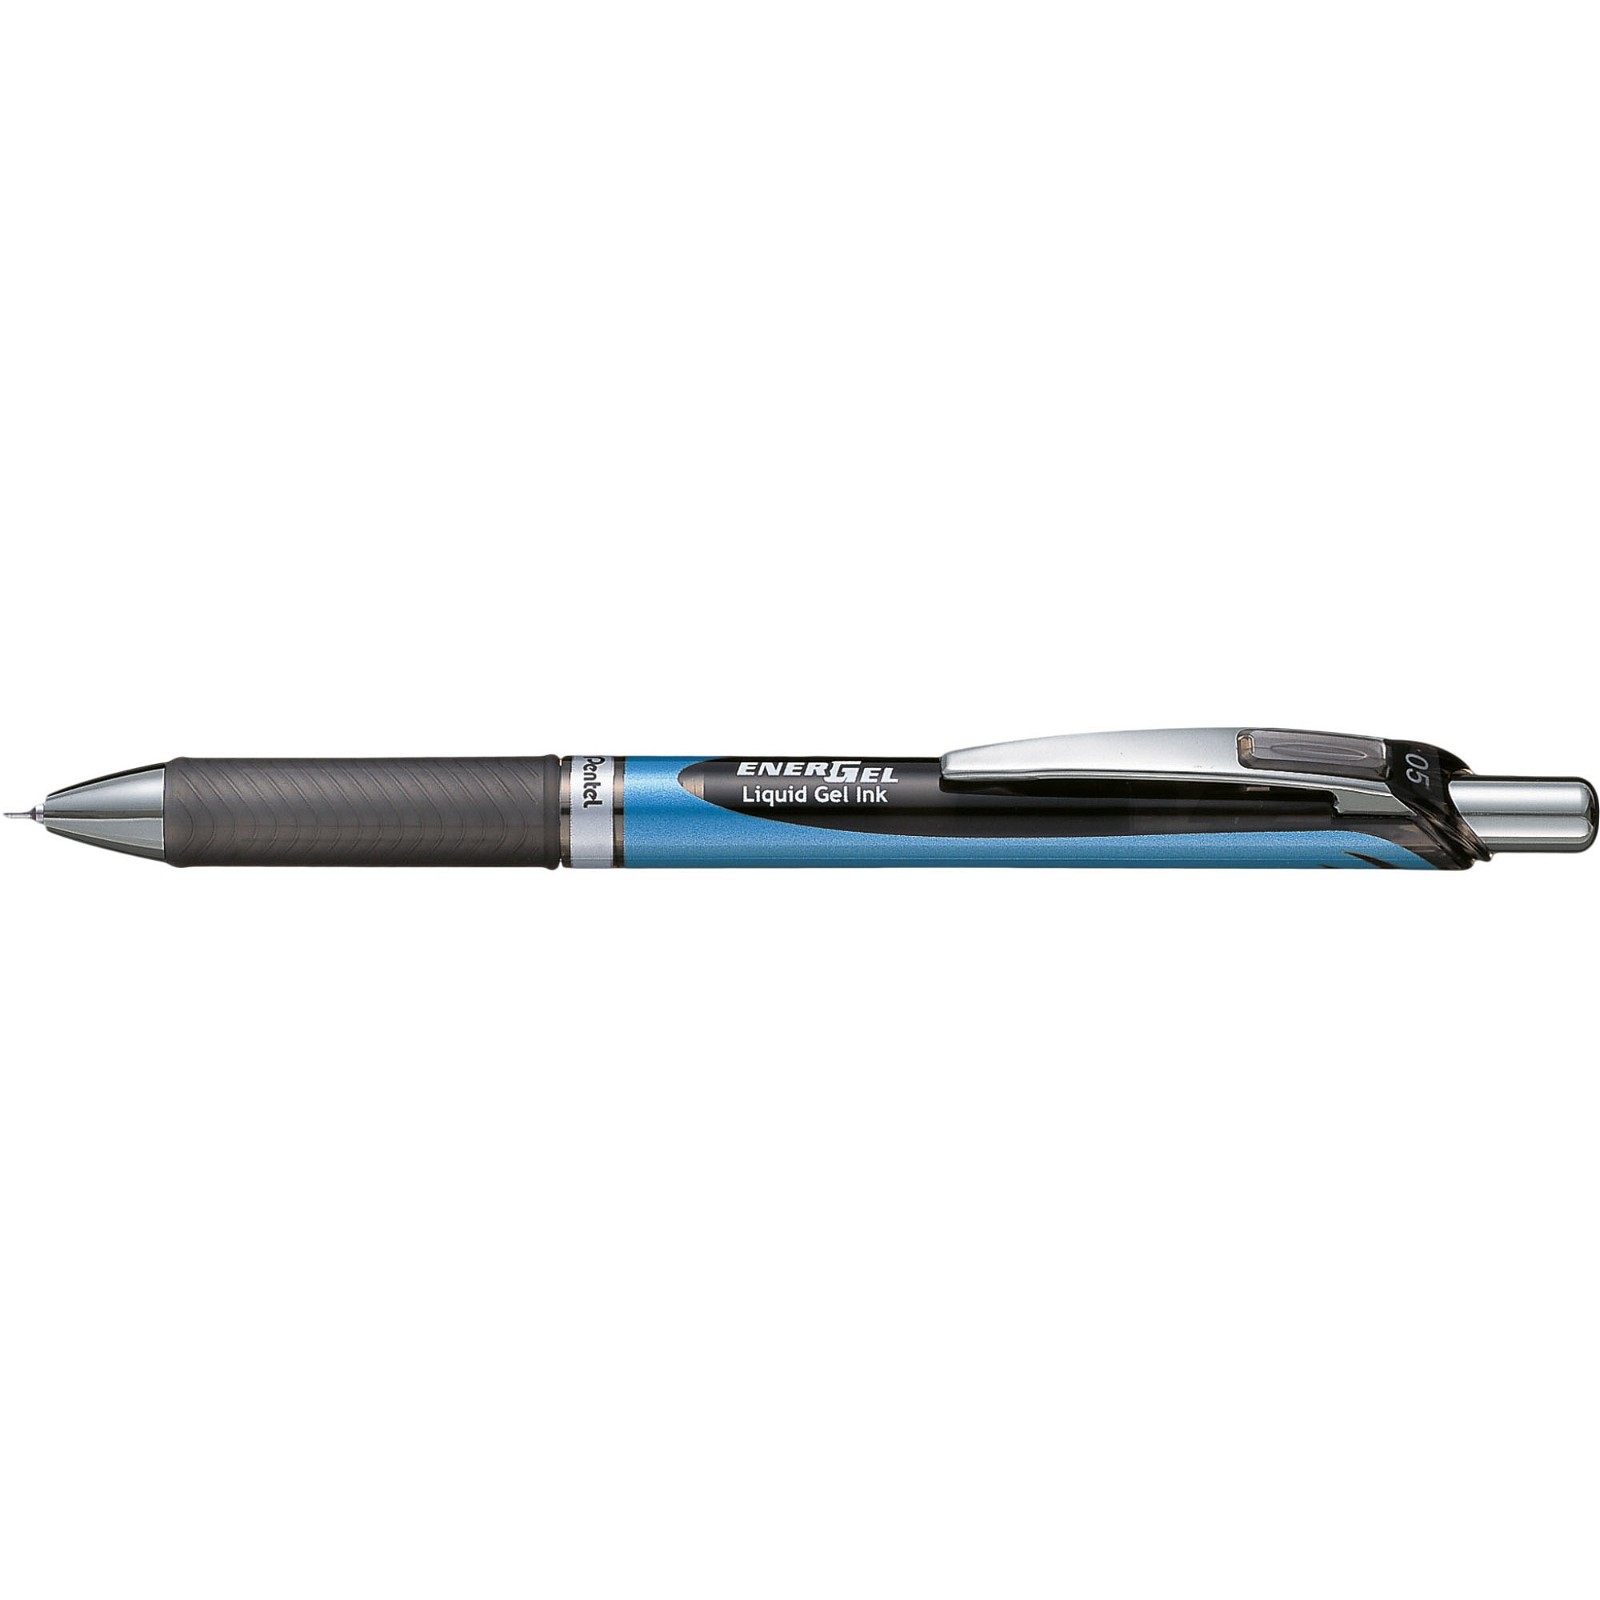 Pentel BLN75 EnerGel pen med 0,5 mm spids i skrivefarven sort